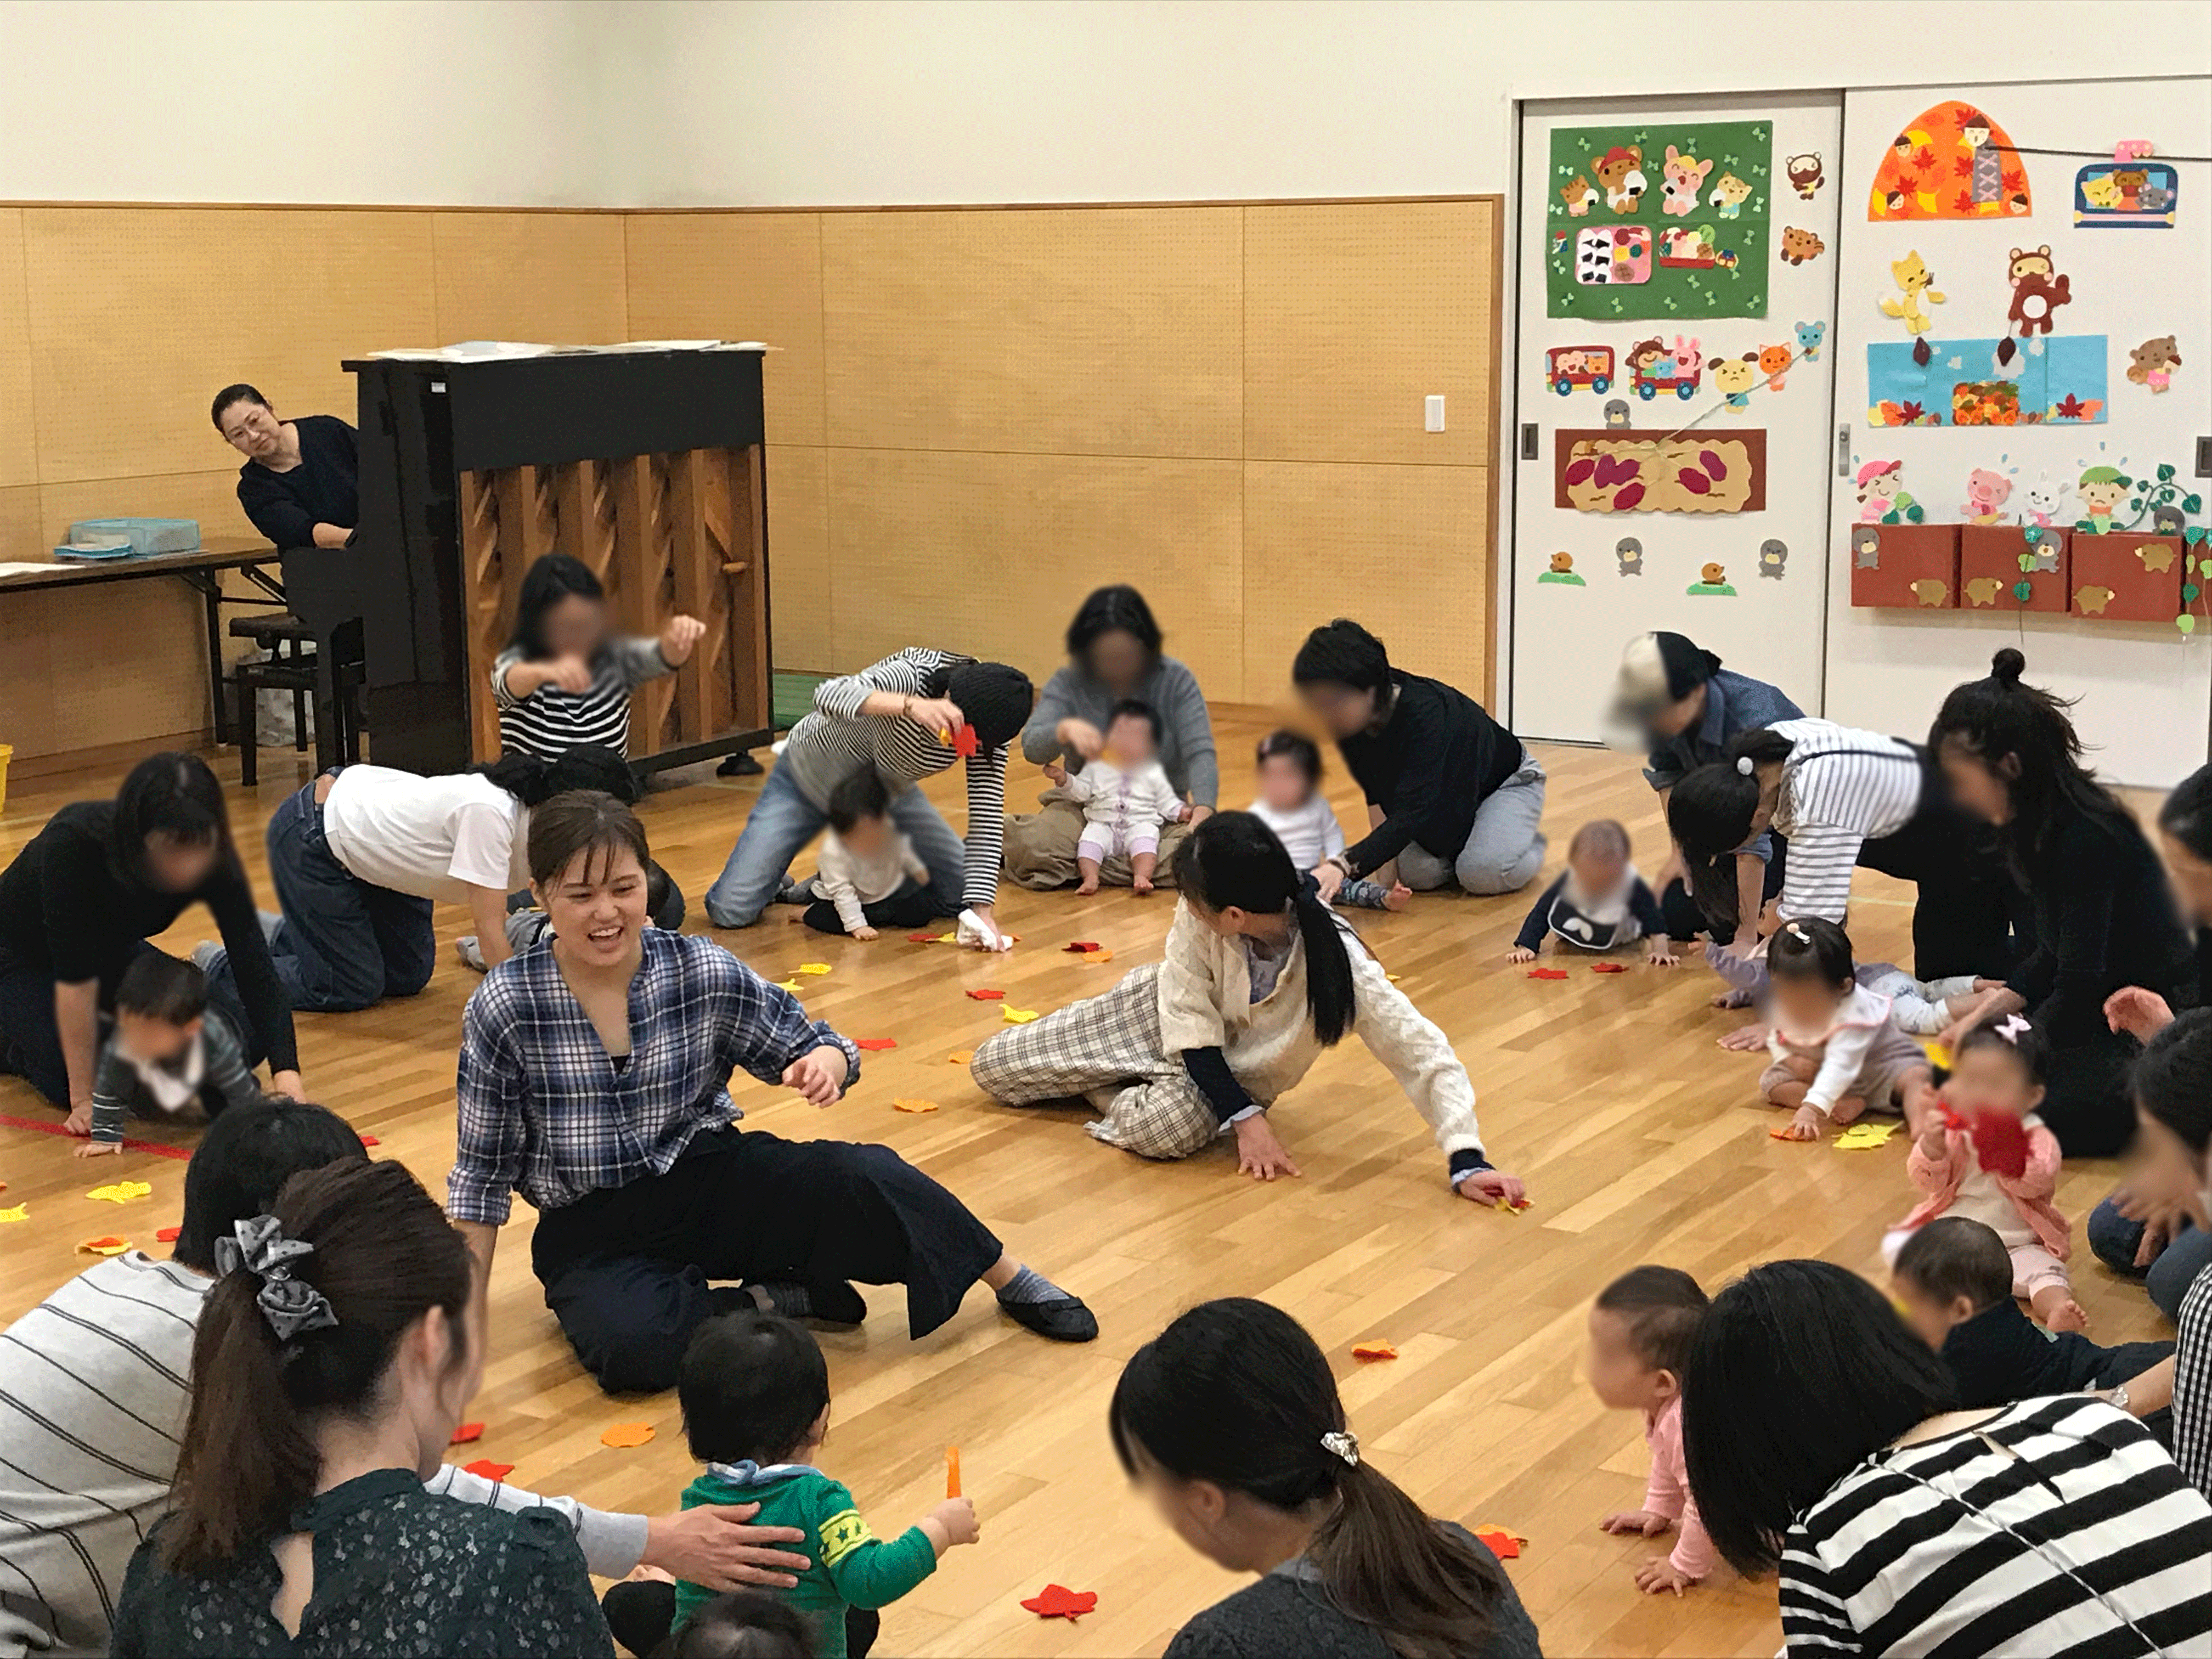 落ち葉を模した小道具を用いた、動きのあるプログラム。輪の中心には小暮先生と共に笑顔で子どもと向き合う実習生の姿。